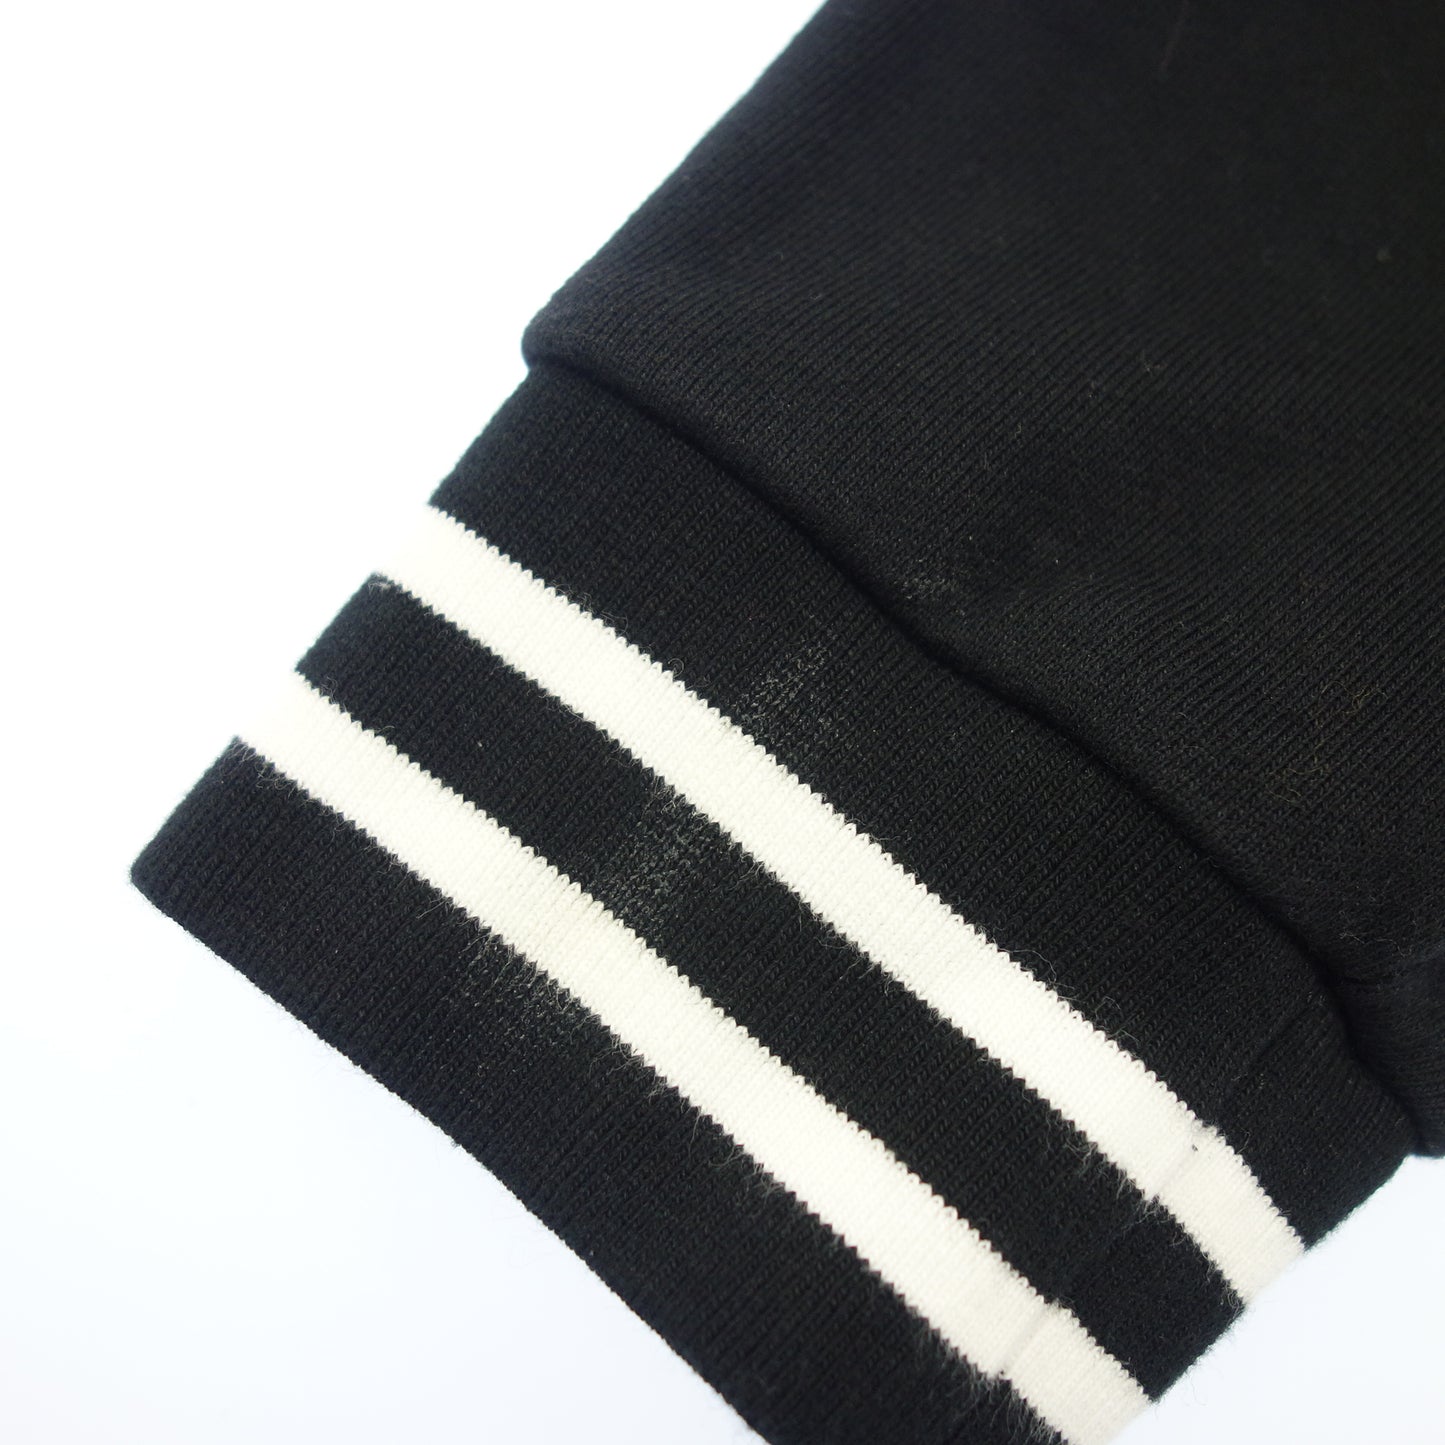 Used ◆Fendi Sailor Jacket Sweatshirt JFH130 Kids Black Size 12+ FENDI [AFB16] 